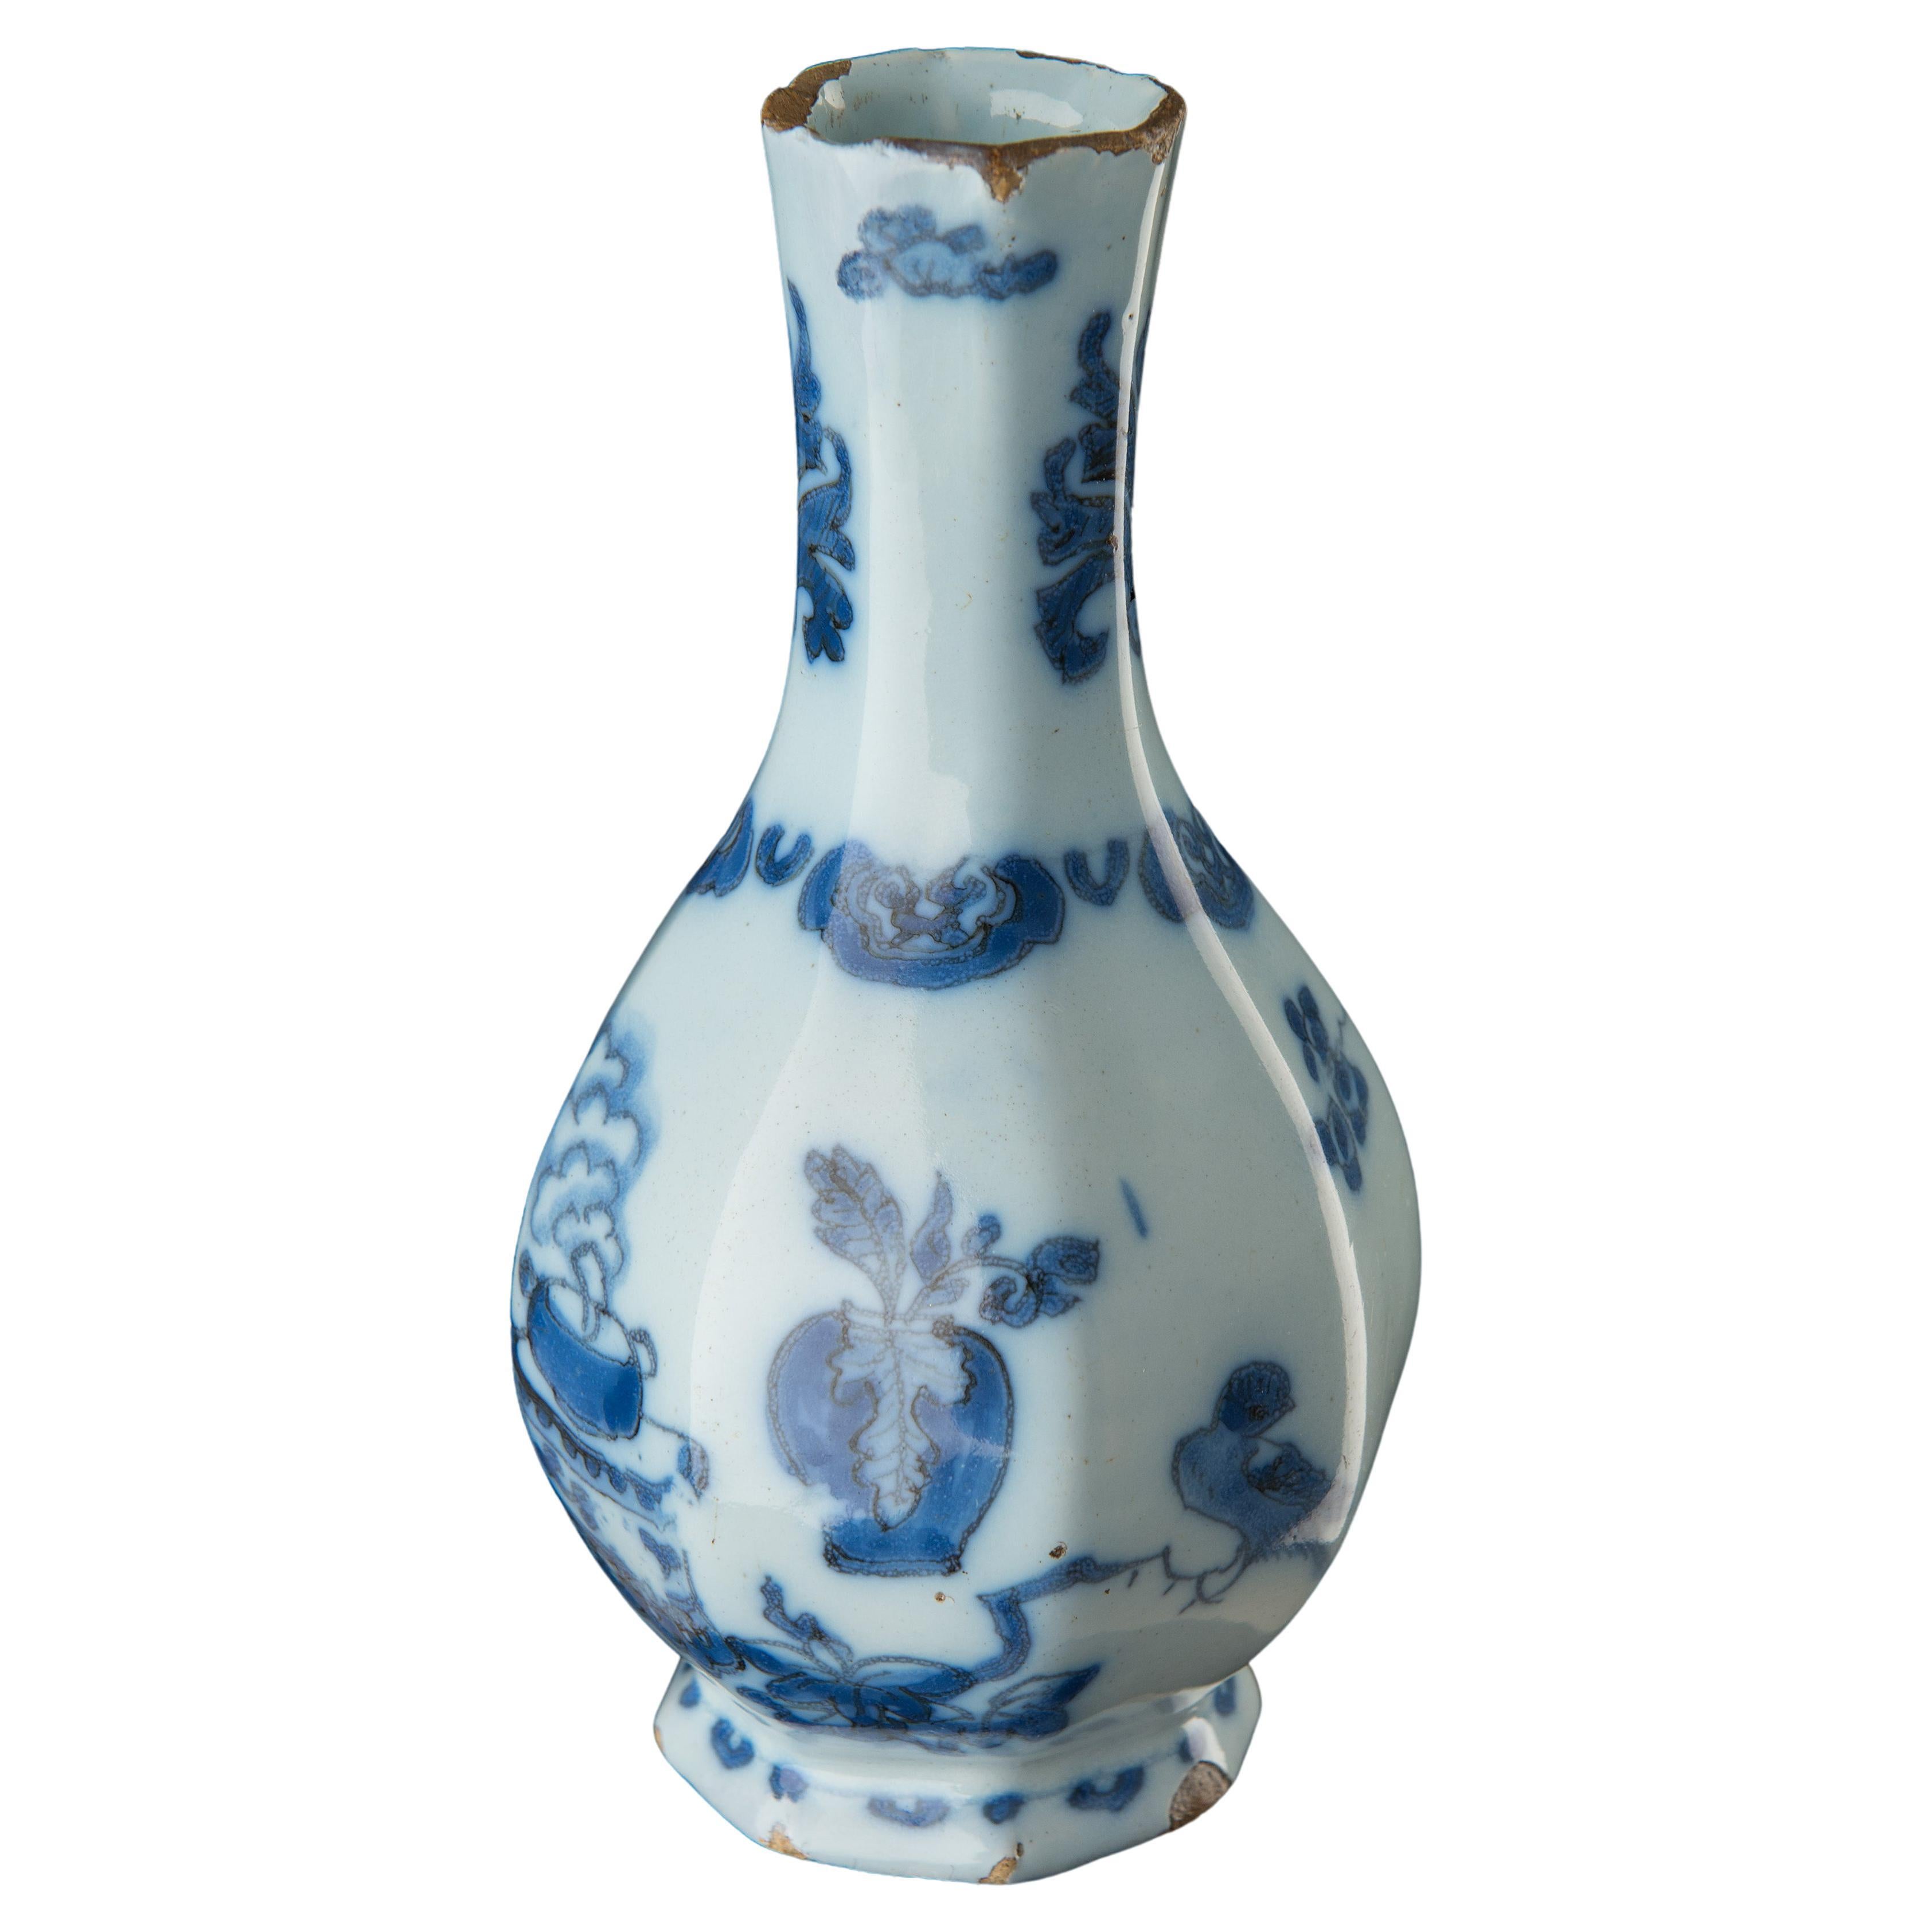 Vase bouteille en cramique de Delft bleu et blanc de style chinoiserie, vers 1685 Faence